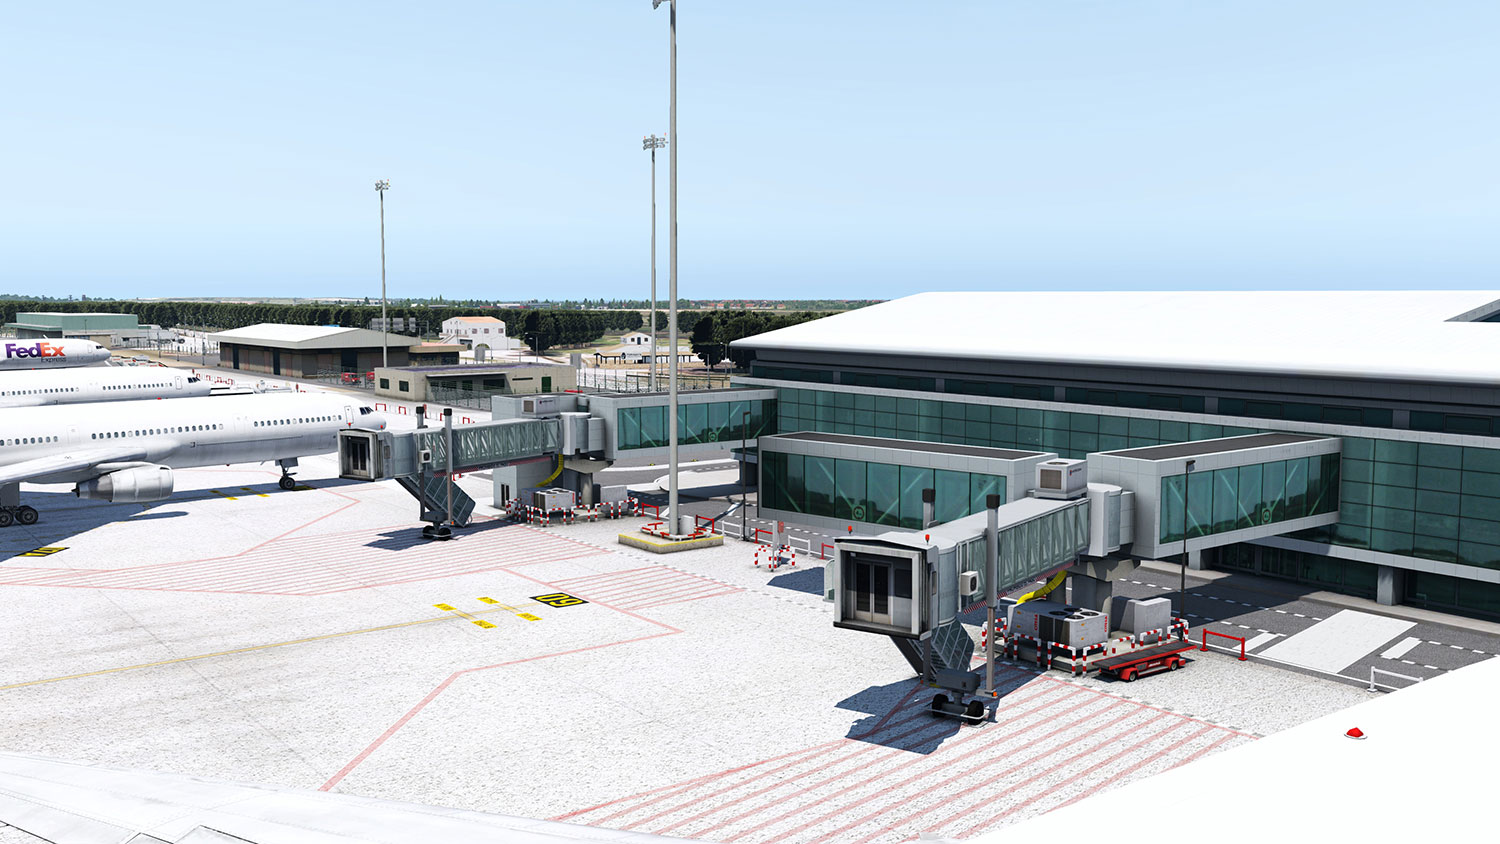 Airport Menorca XP